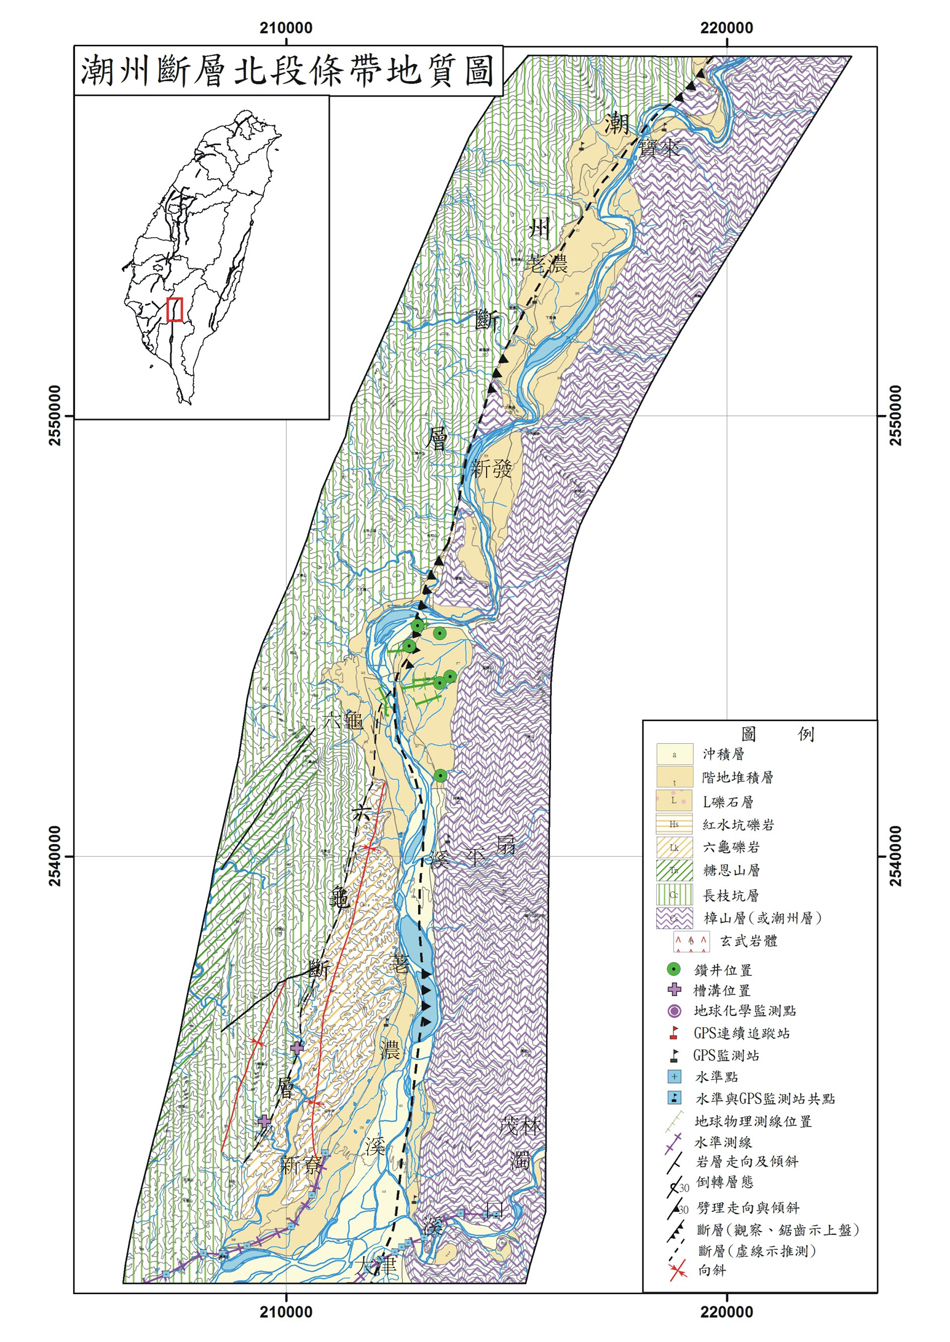 潮州斷層條帶地質圖。A：北段